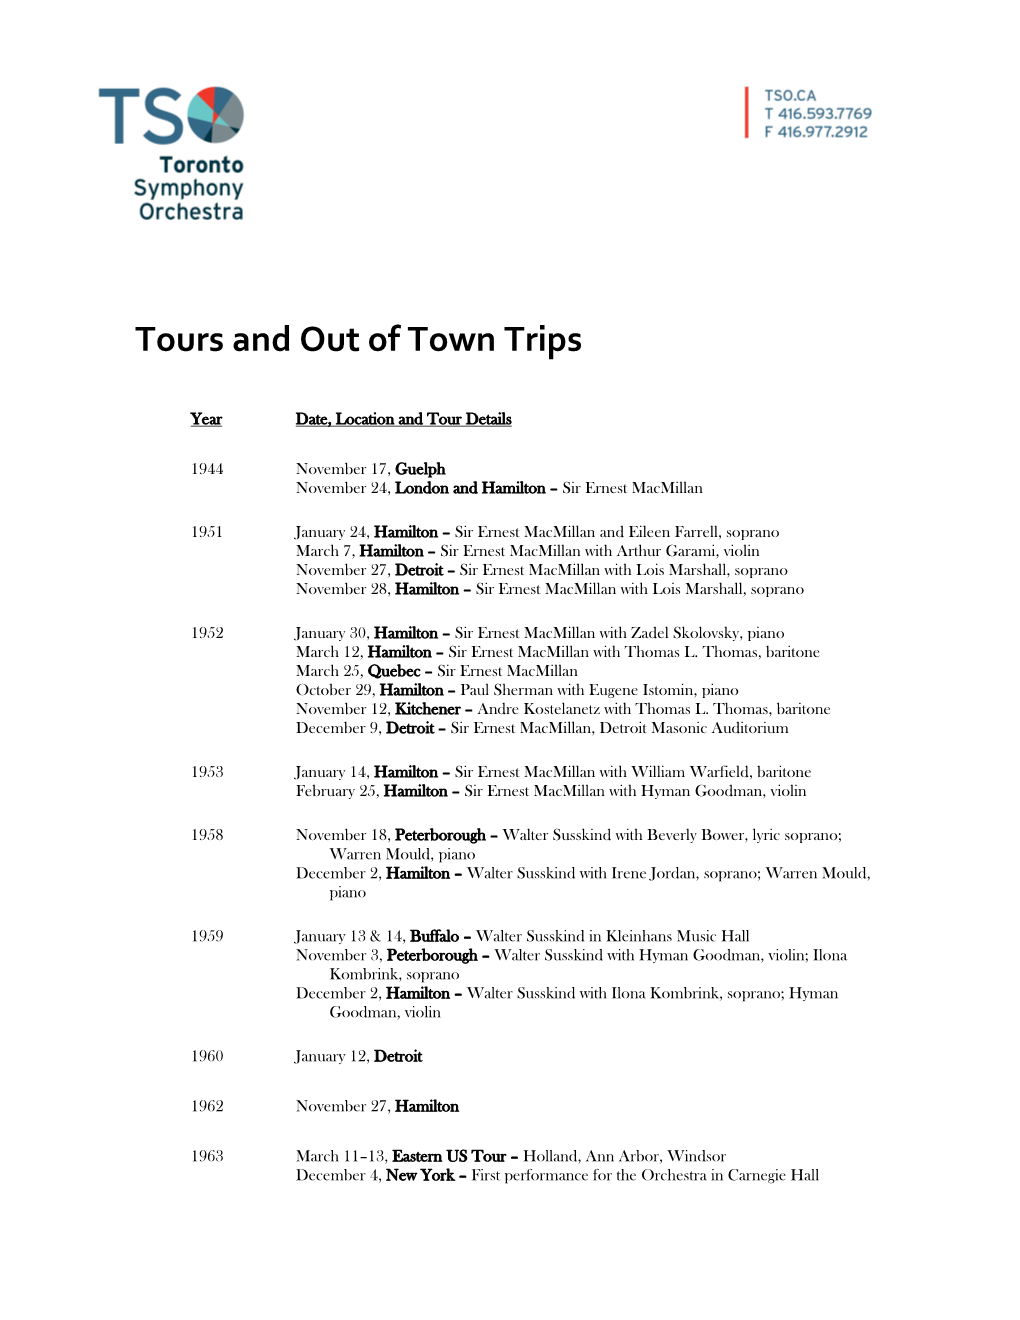 Download the TSO Tour History